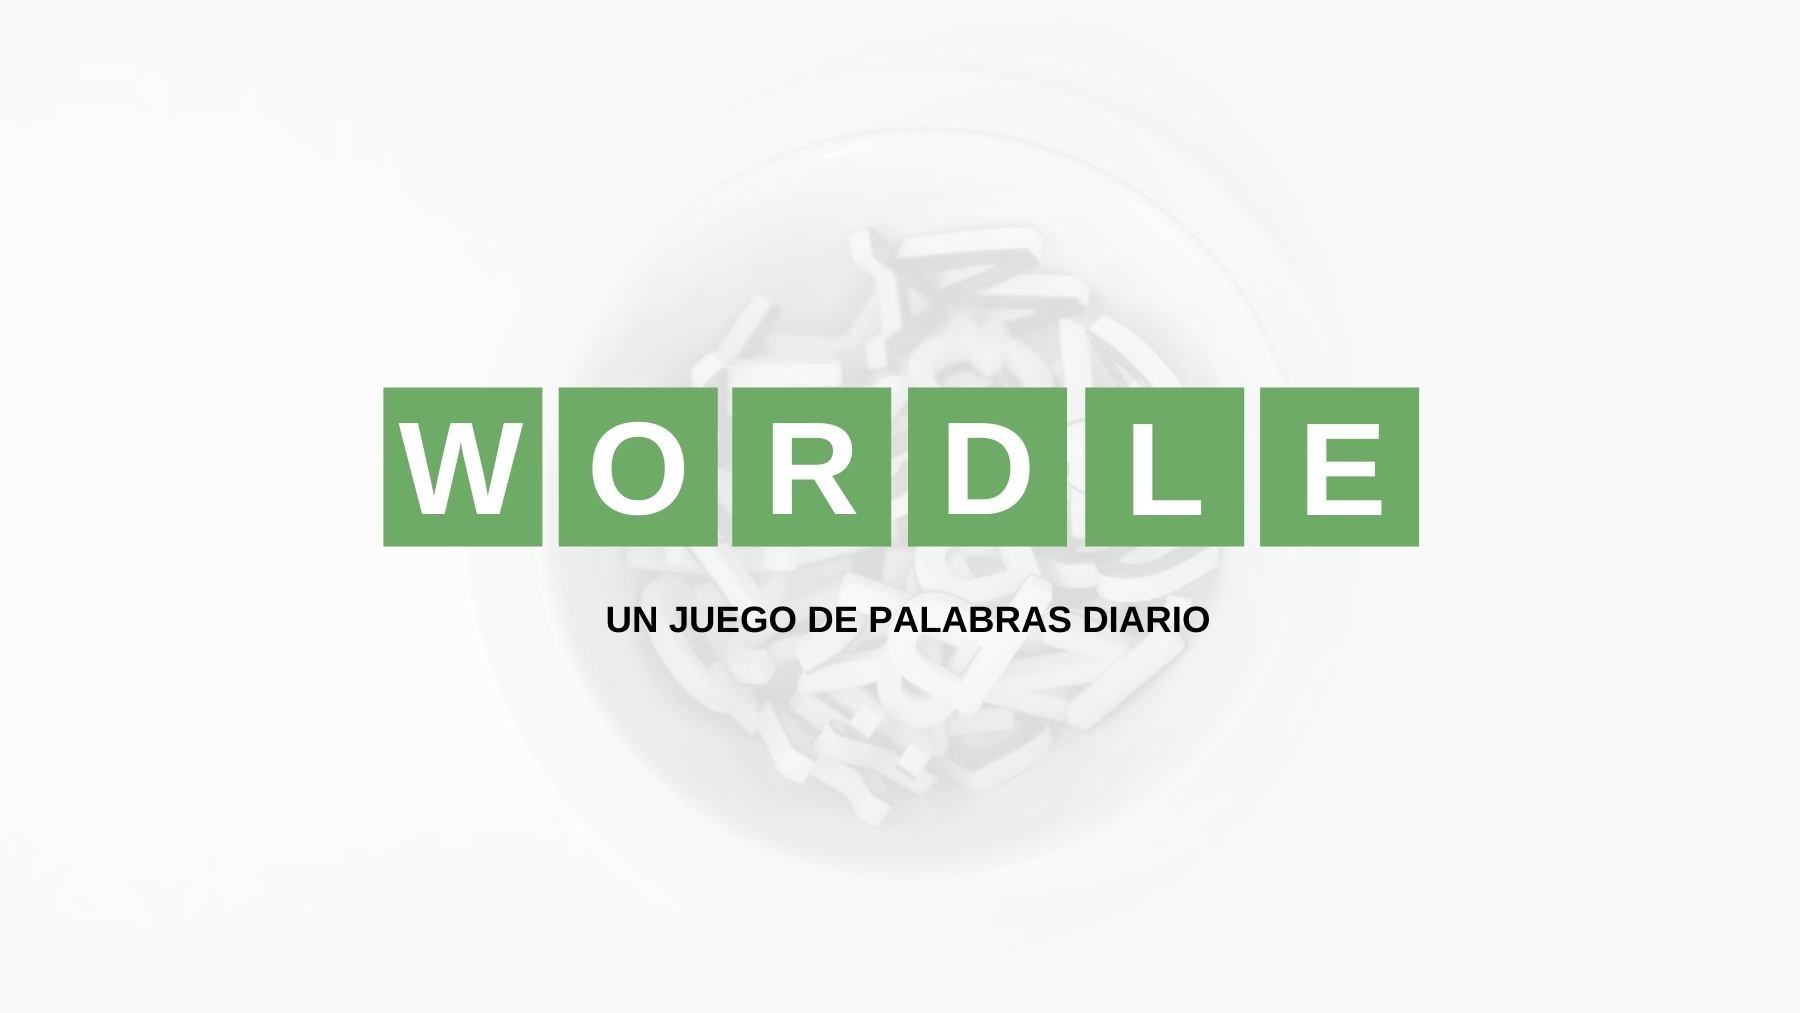 Solución y pistas palabra Wordle español, científico y con tildes hoy, domingo 4 de septiembre de 2022